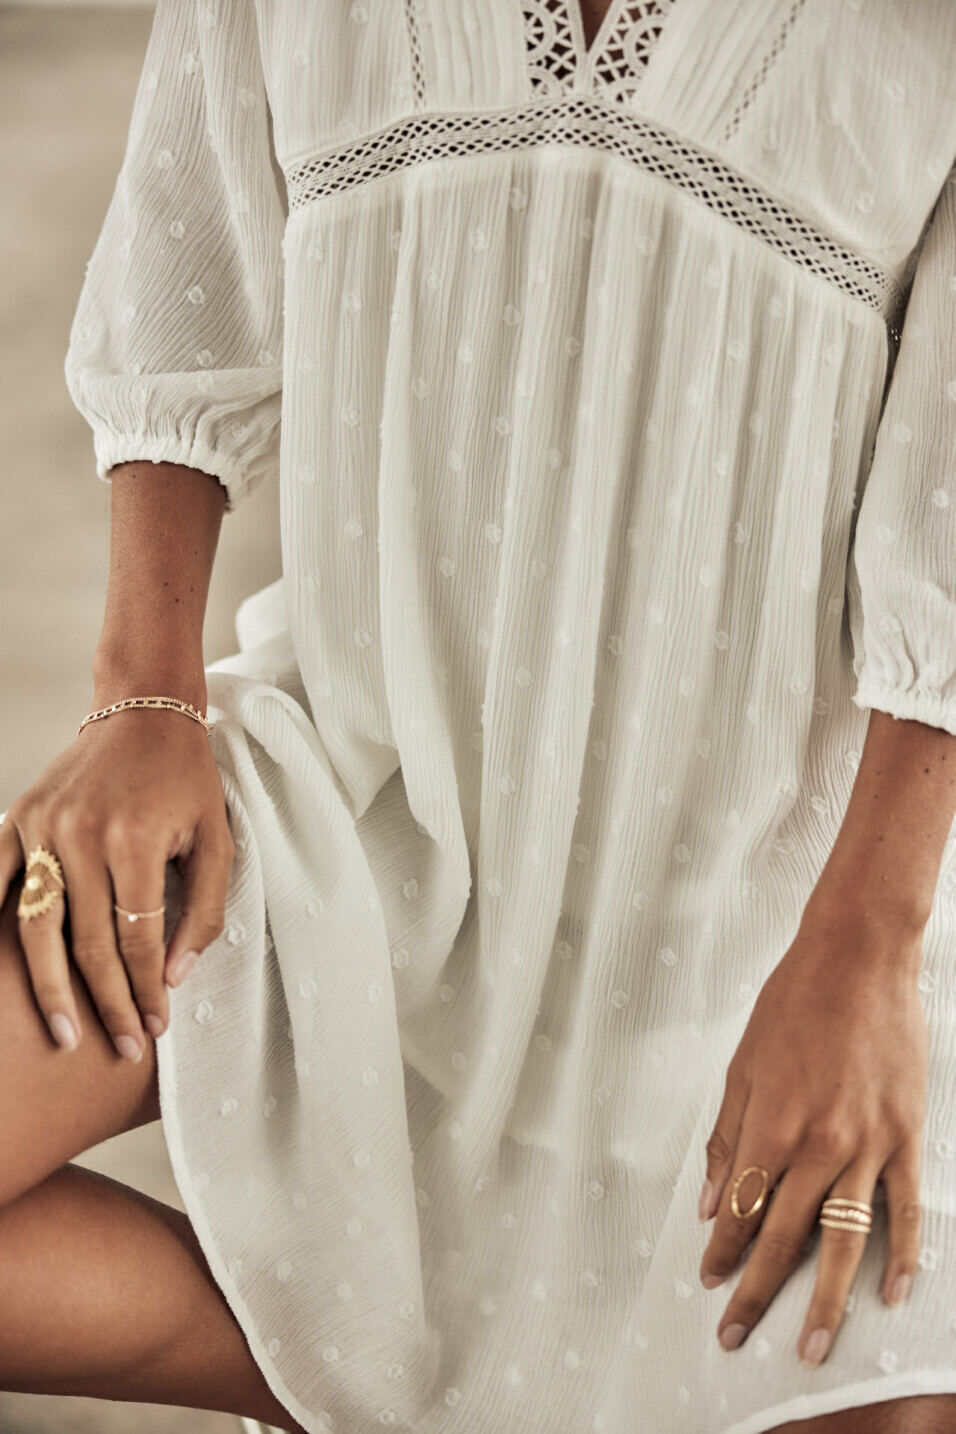 Kurzes Kleid Woman Rafilda Plain Color White | Freeman T. Porter